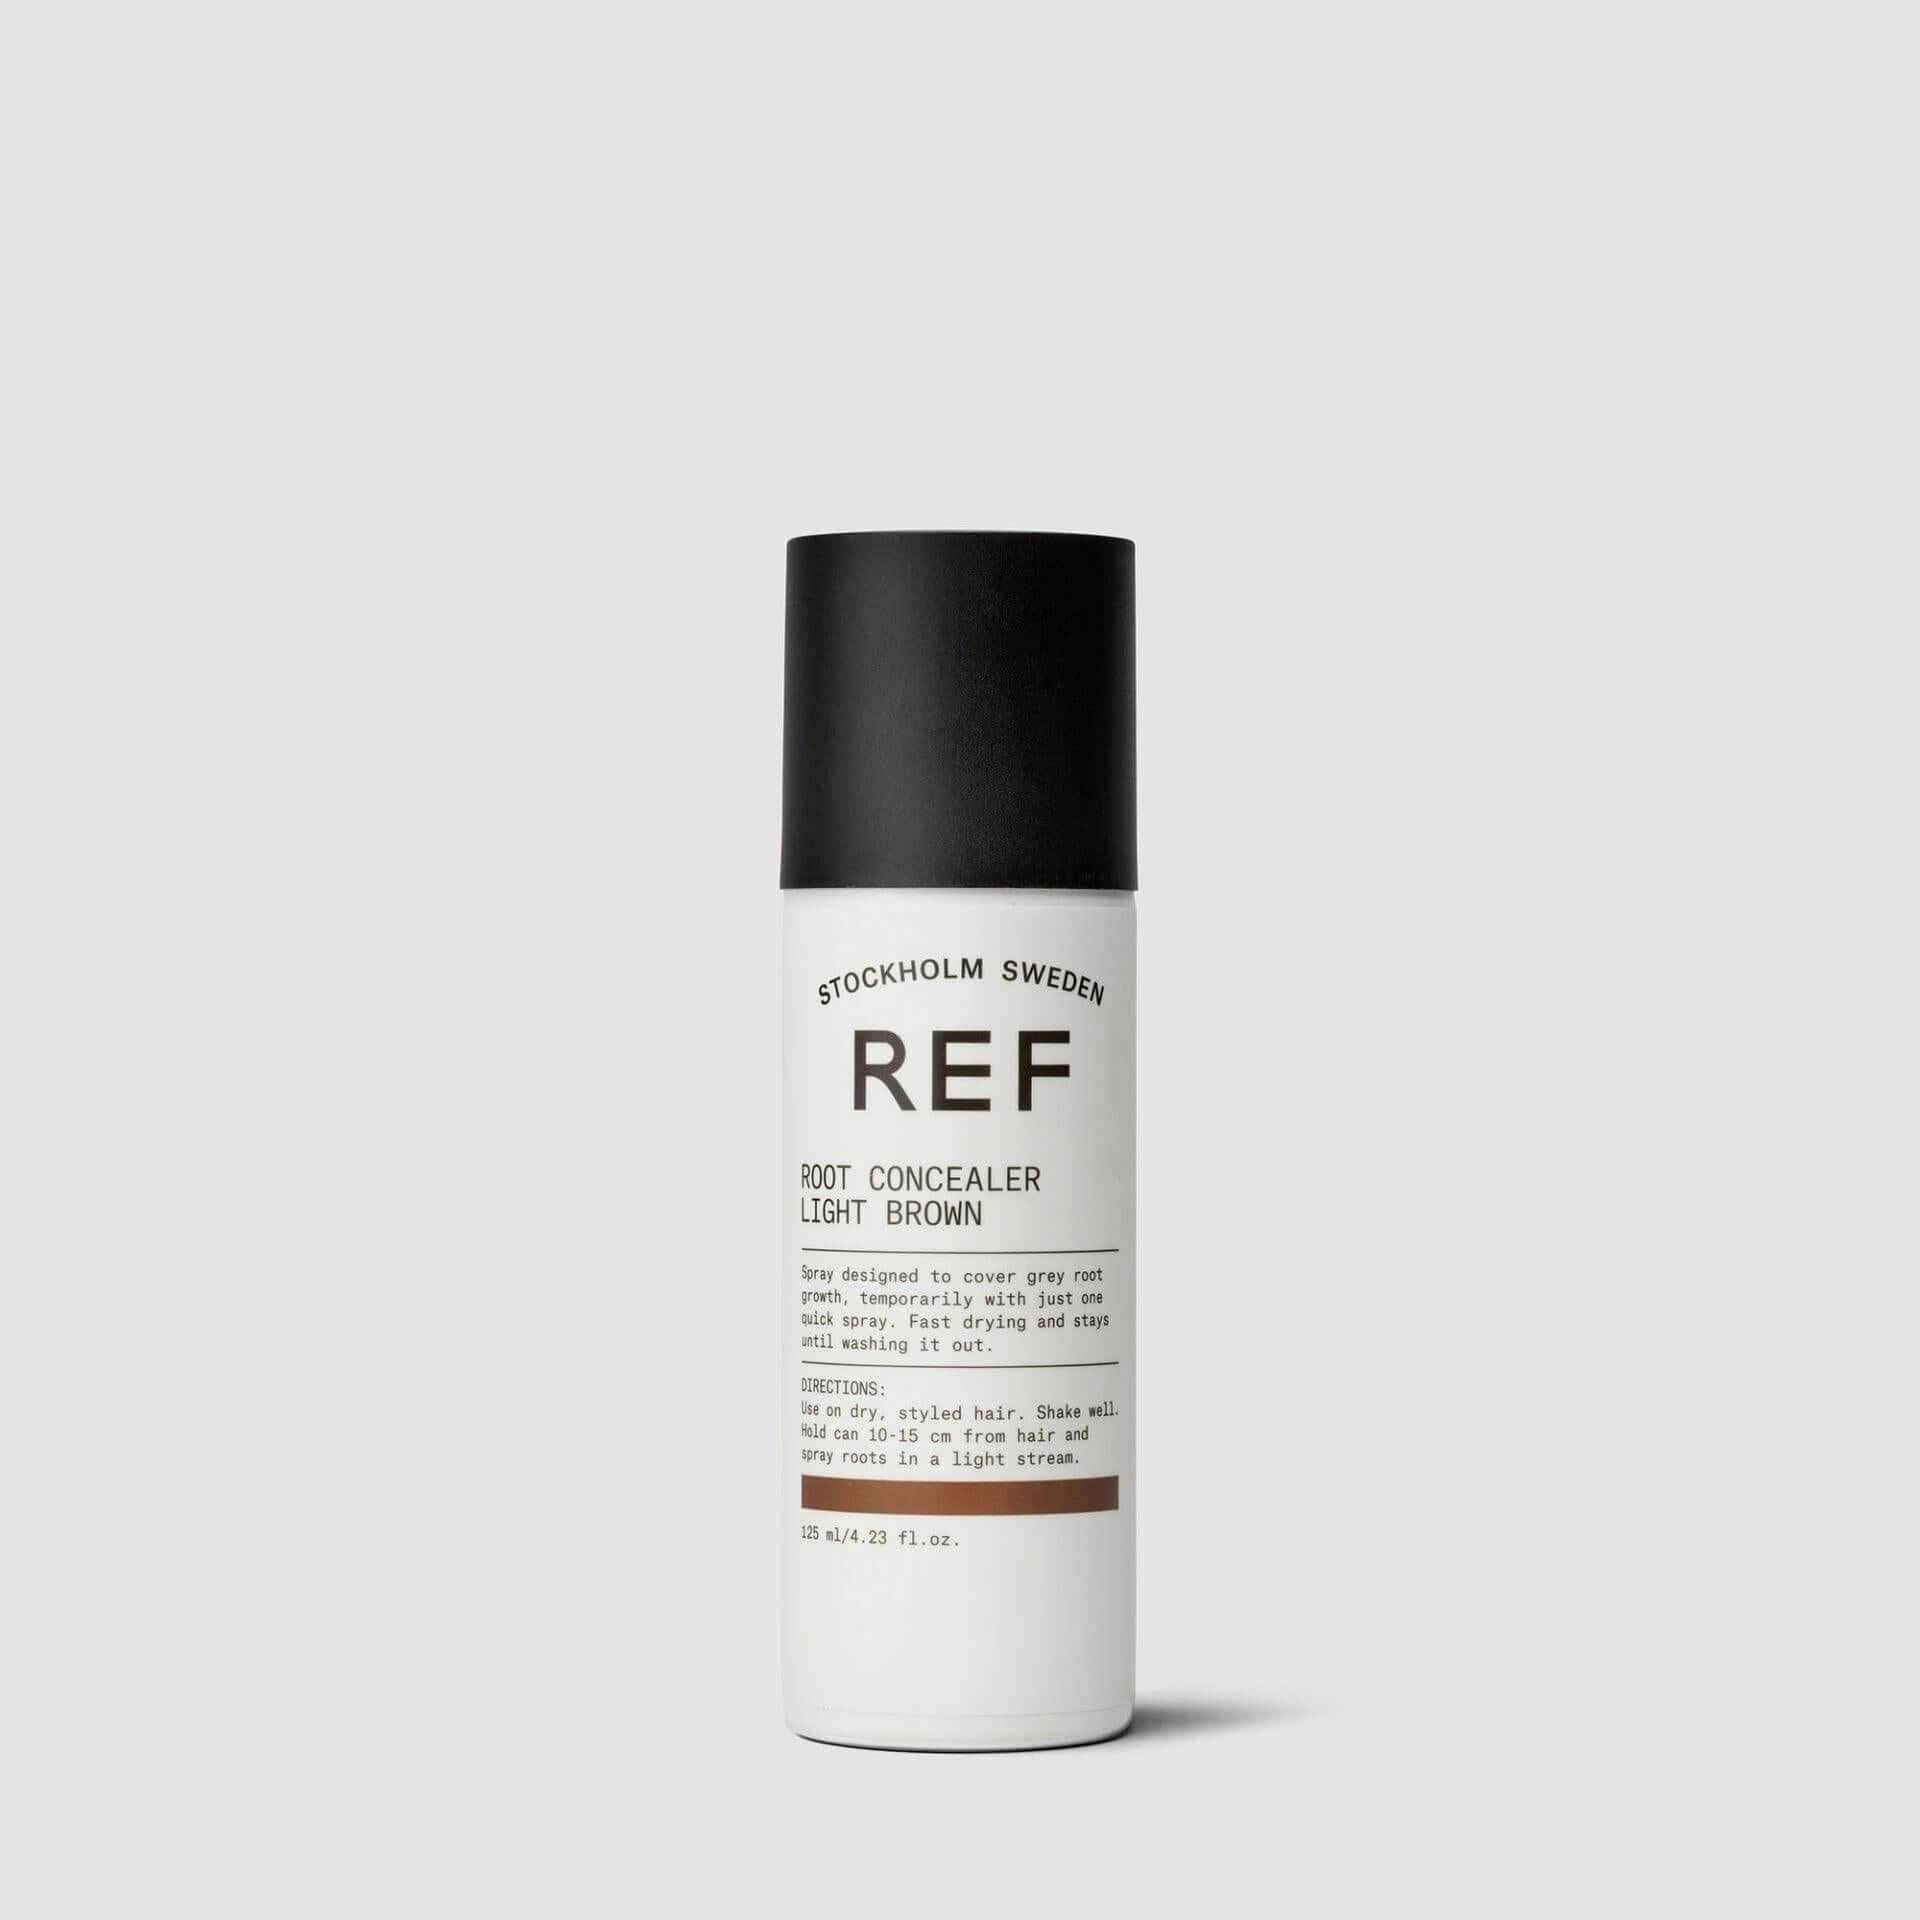 A bottle of REF STOCKHOLM SWEDEN Root Concealer for grey roots.